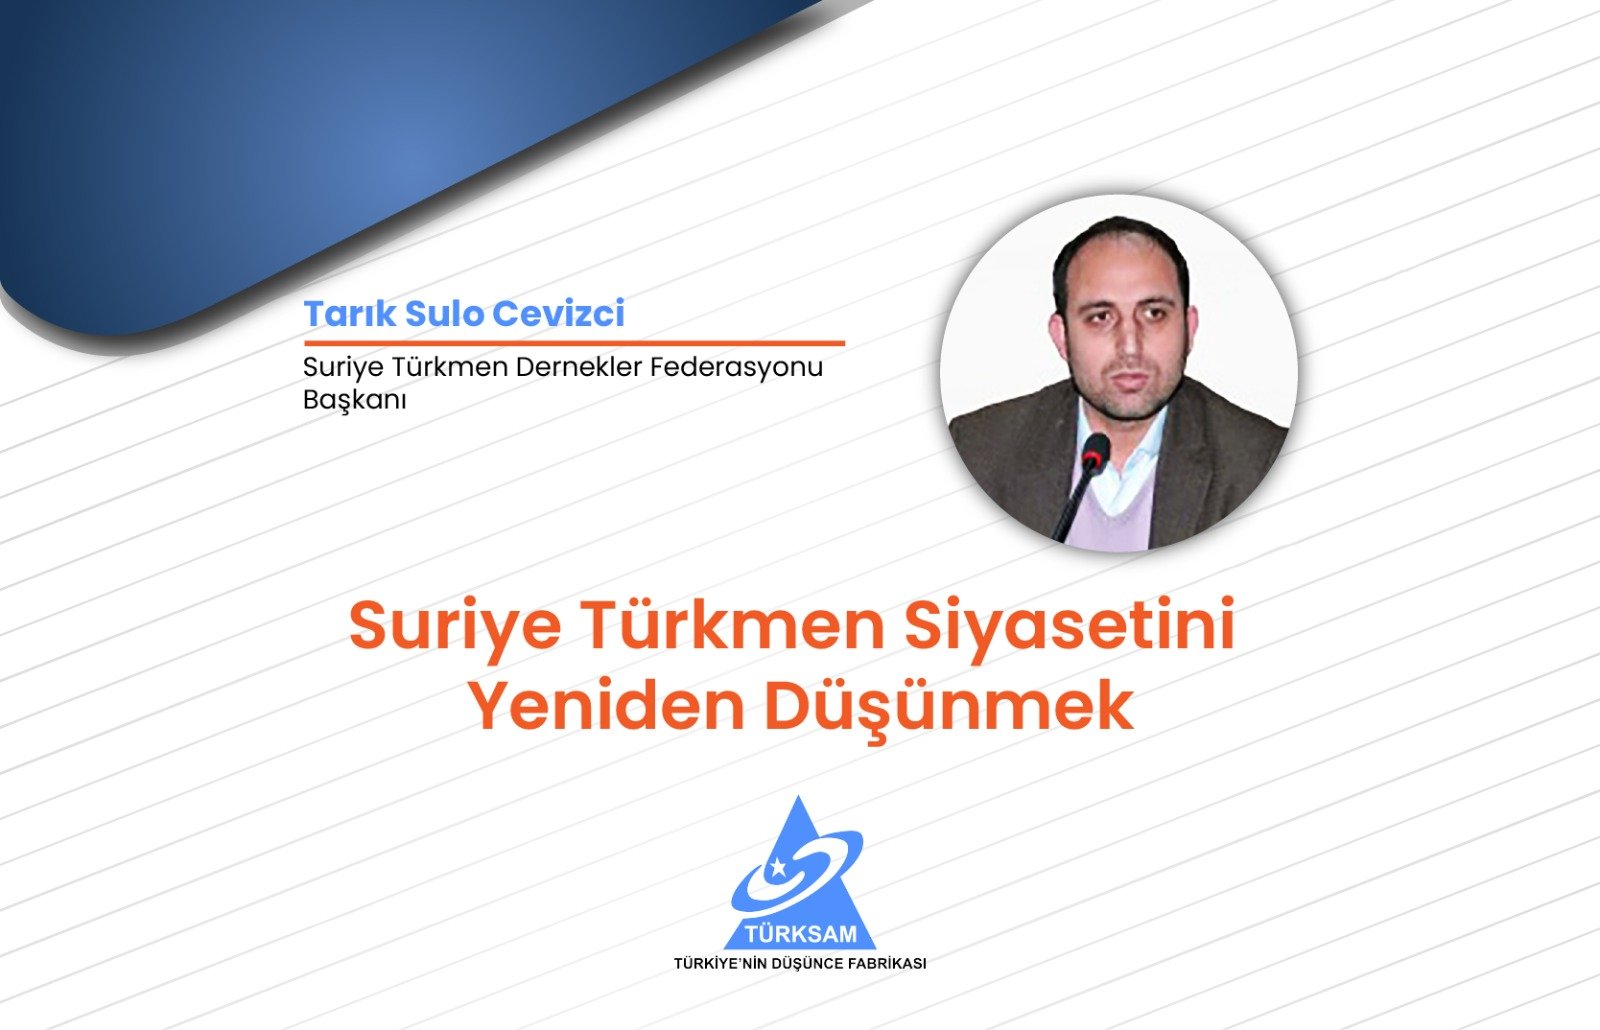 Suriye Türkmen Siyasetini Yeniden Düşünmek 